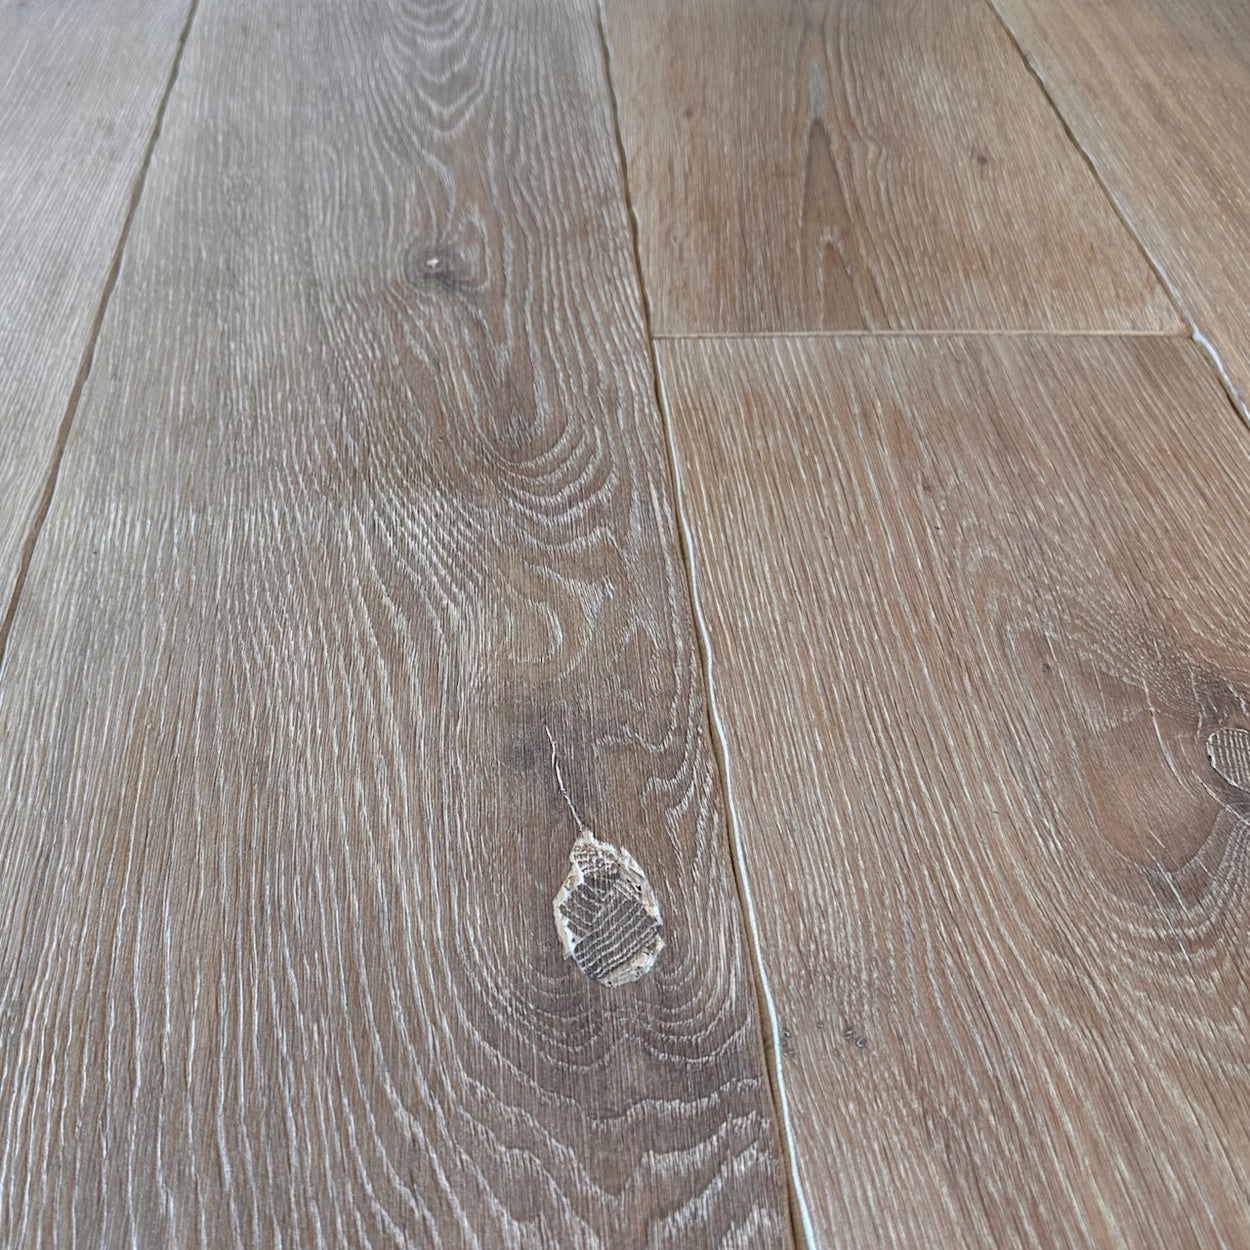 Cotswolds Oak Flooring